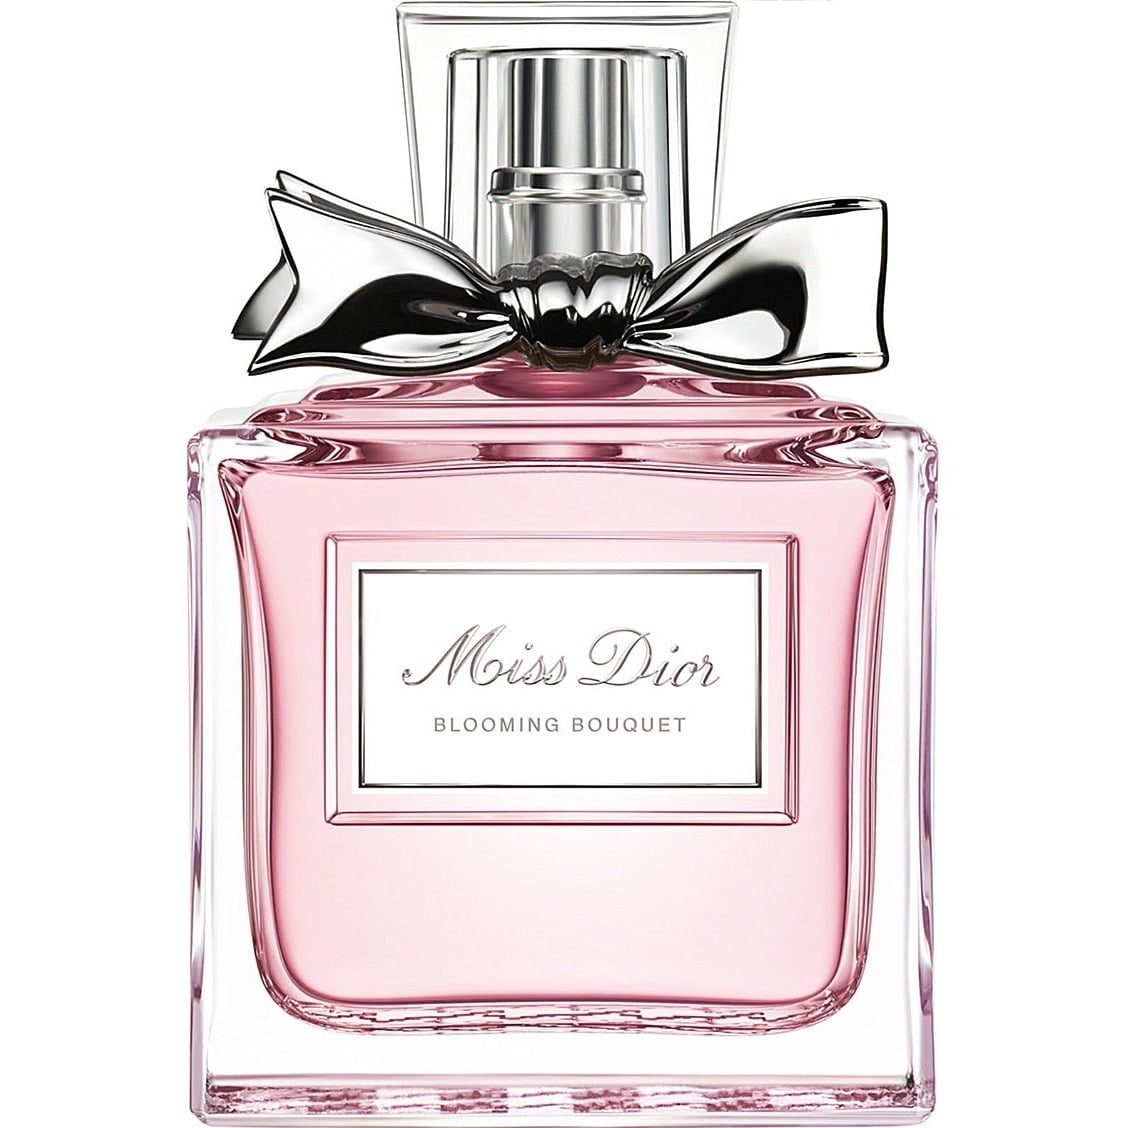 Dior Miss Dior Blooming Bouquet Eau De Toilette, Perfume for Women, 1.7 Oz